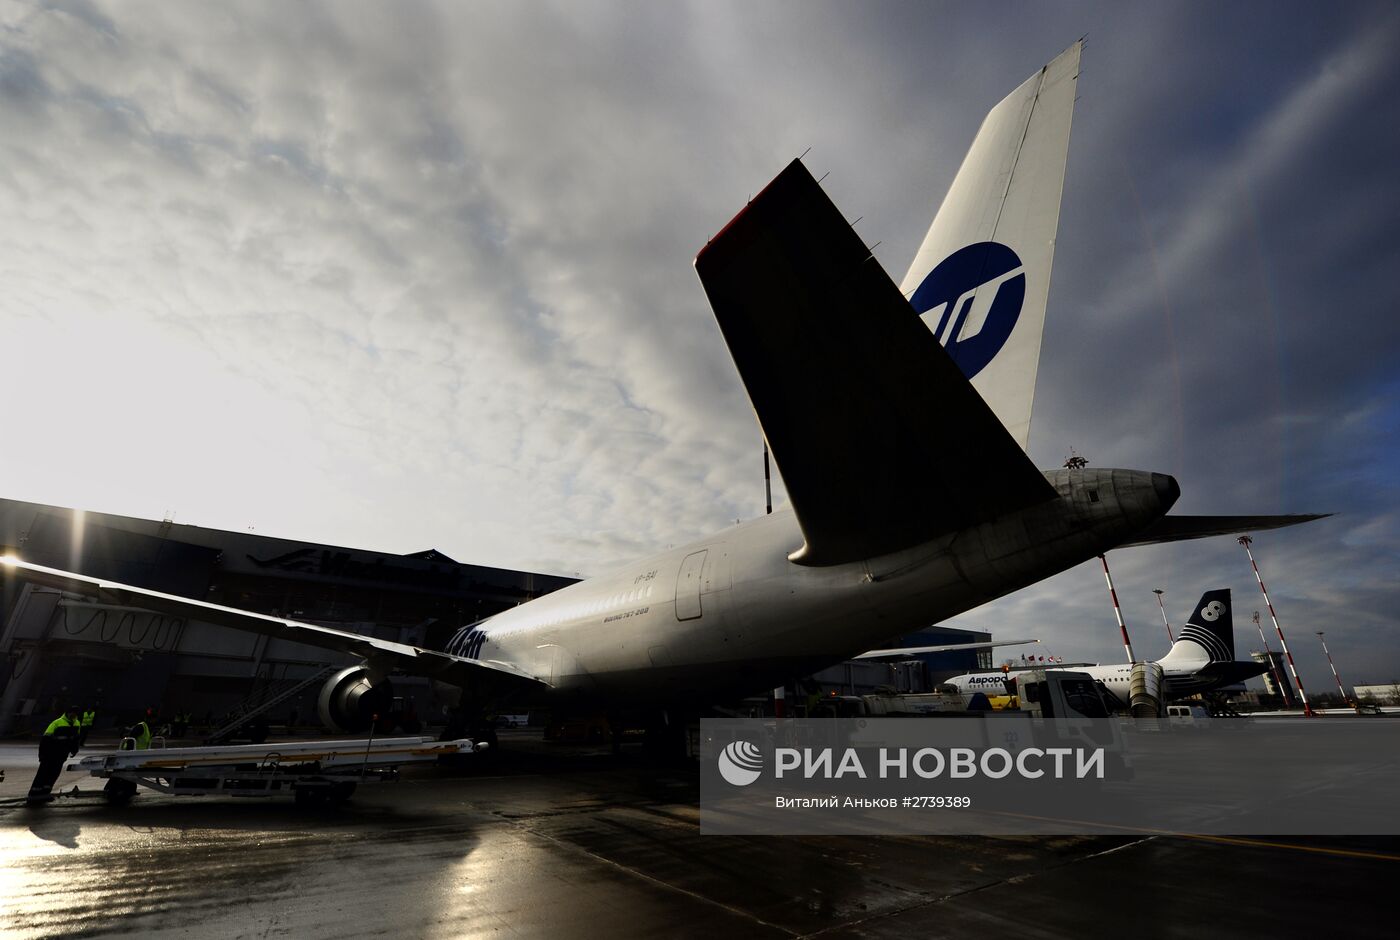 Первый рейс авиакомпании Utair по маршруту Владивосток — Москва